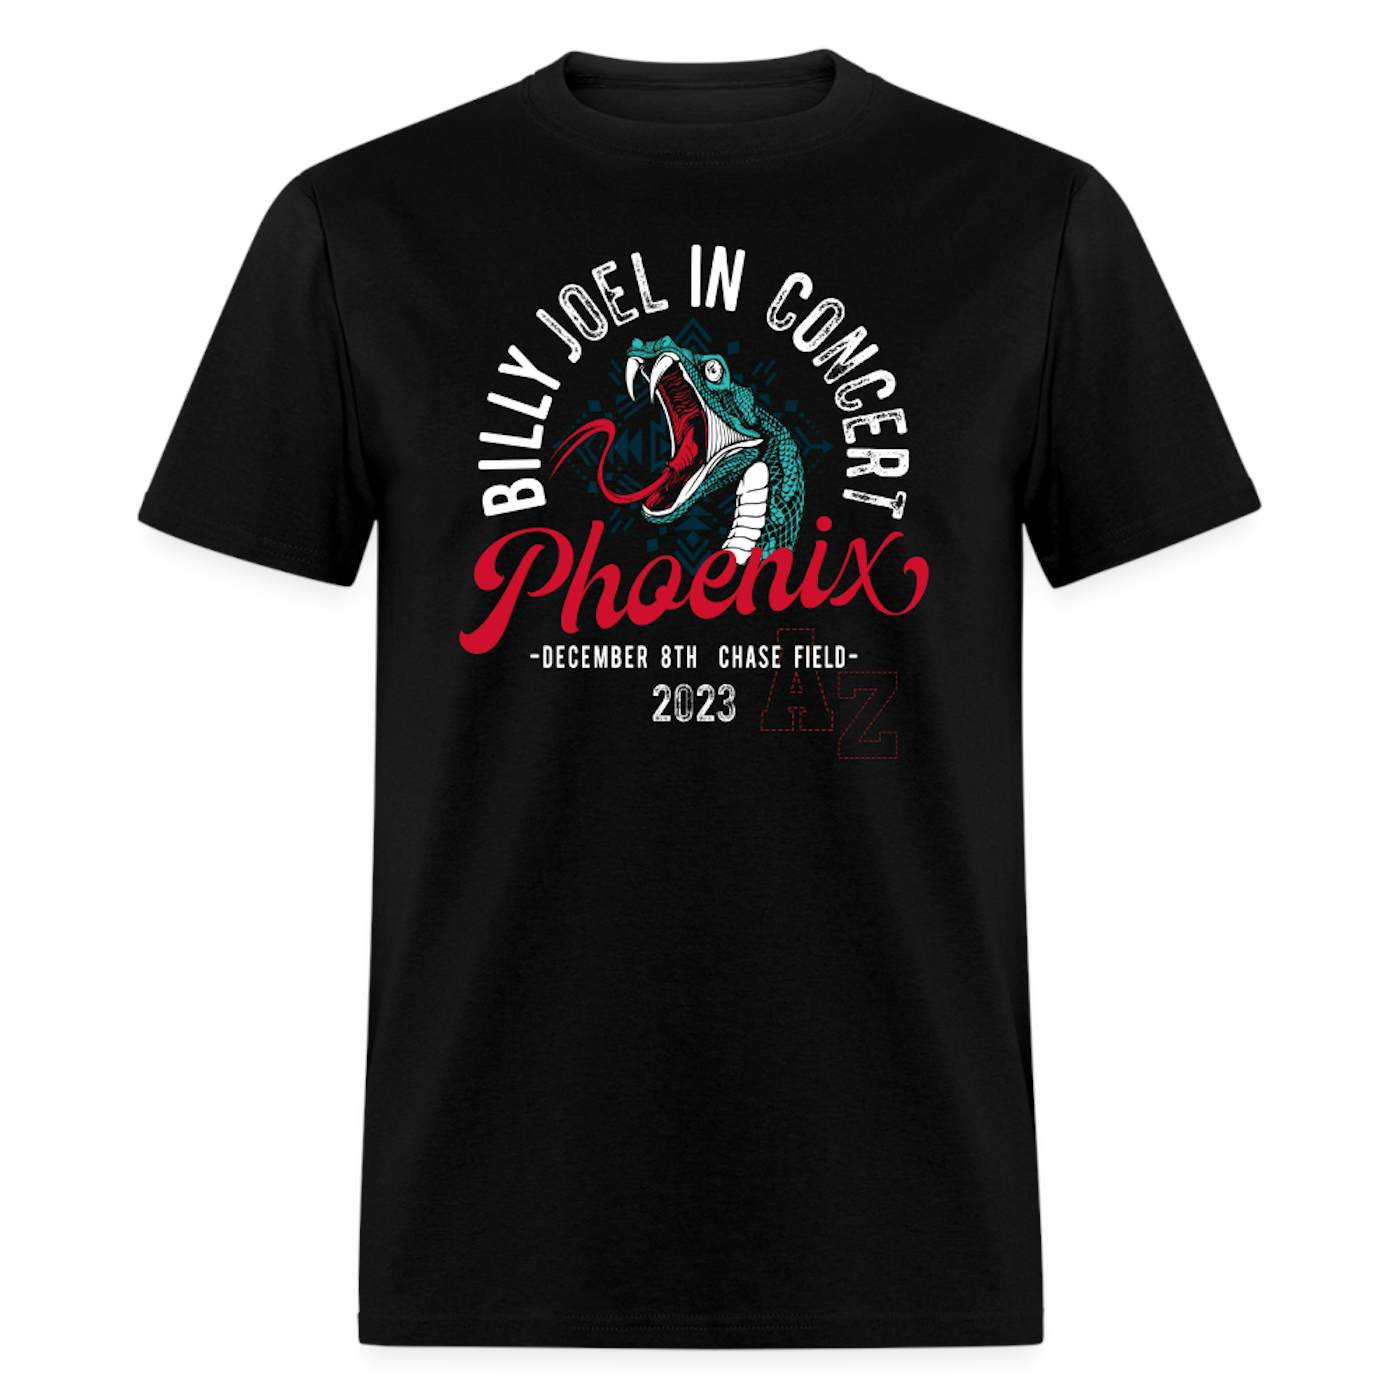  Billy Joel "12-8-23 Phoenix Event" Black T-Shirt - Online Exclusive